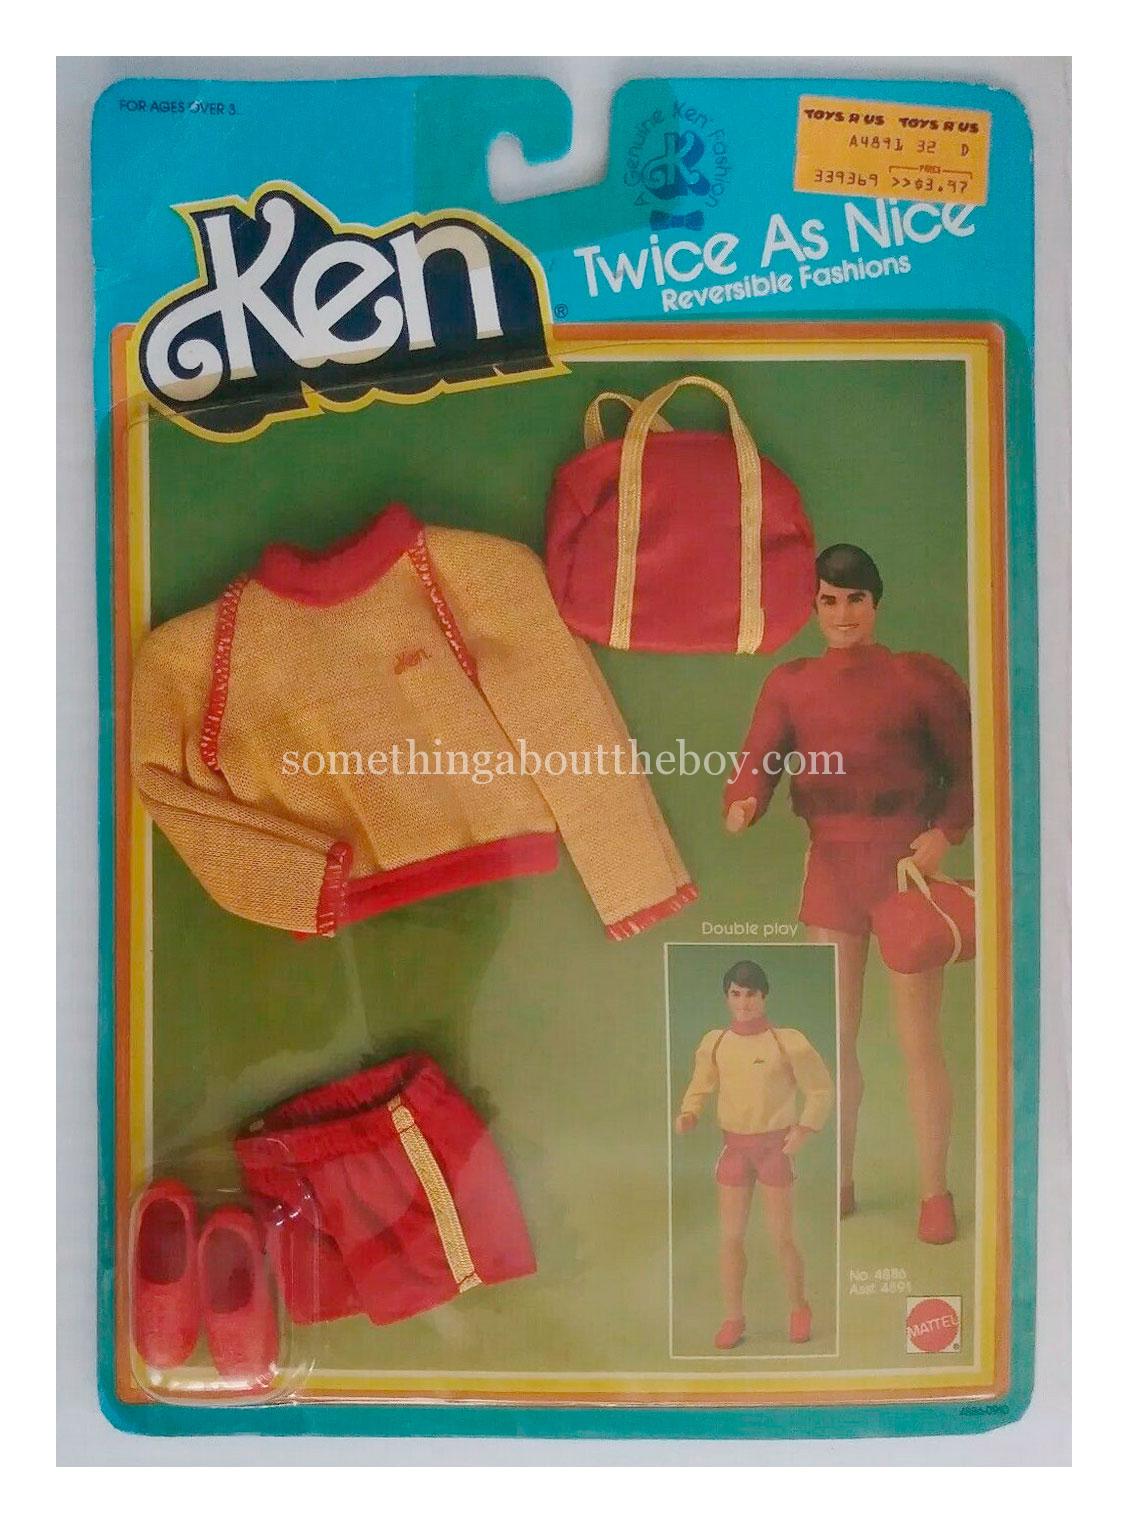 1984 Twice As Nice #4886 in original packaging